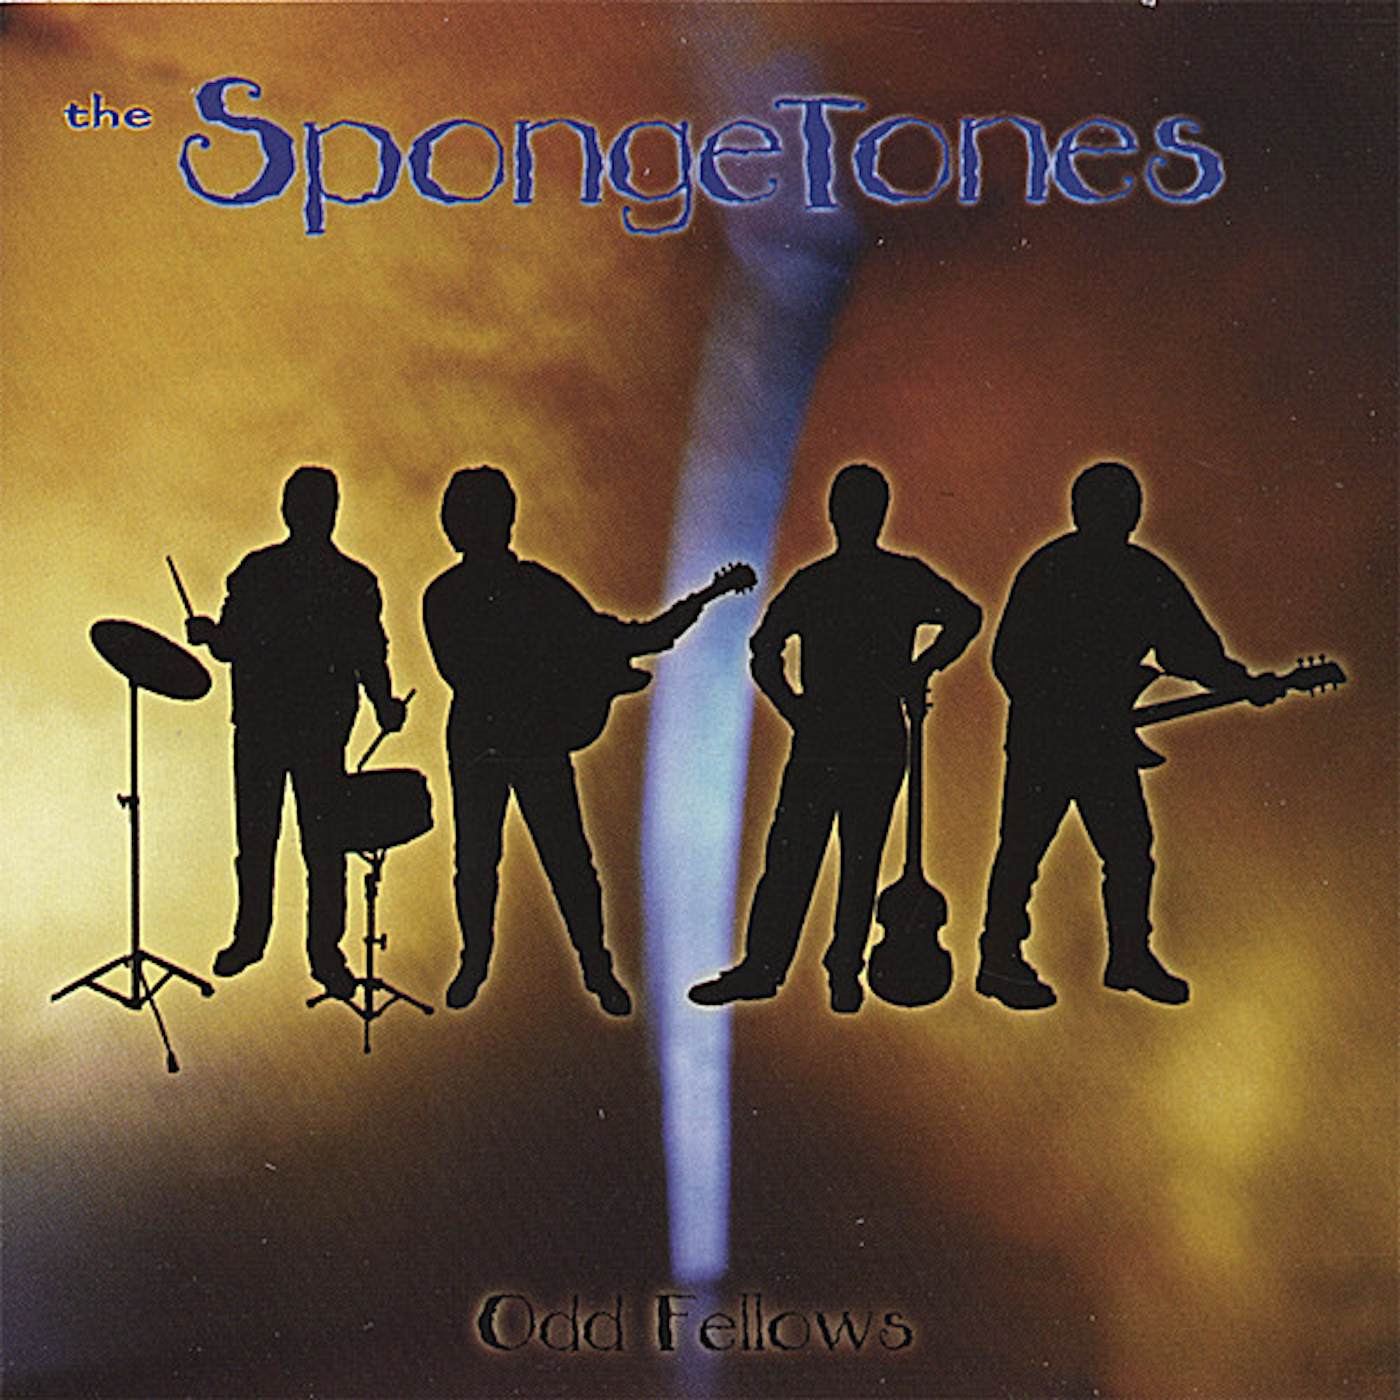 The Spongetones ODD FELLOWS CD